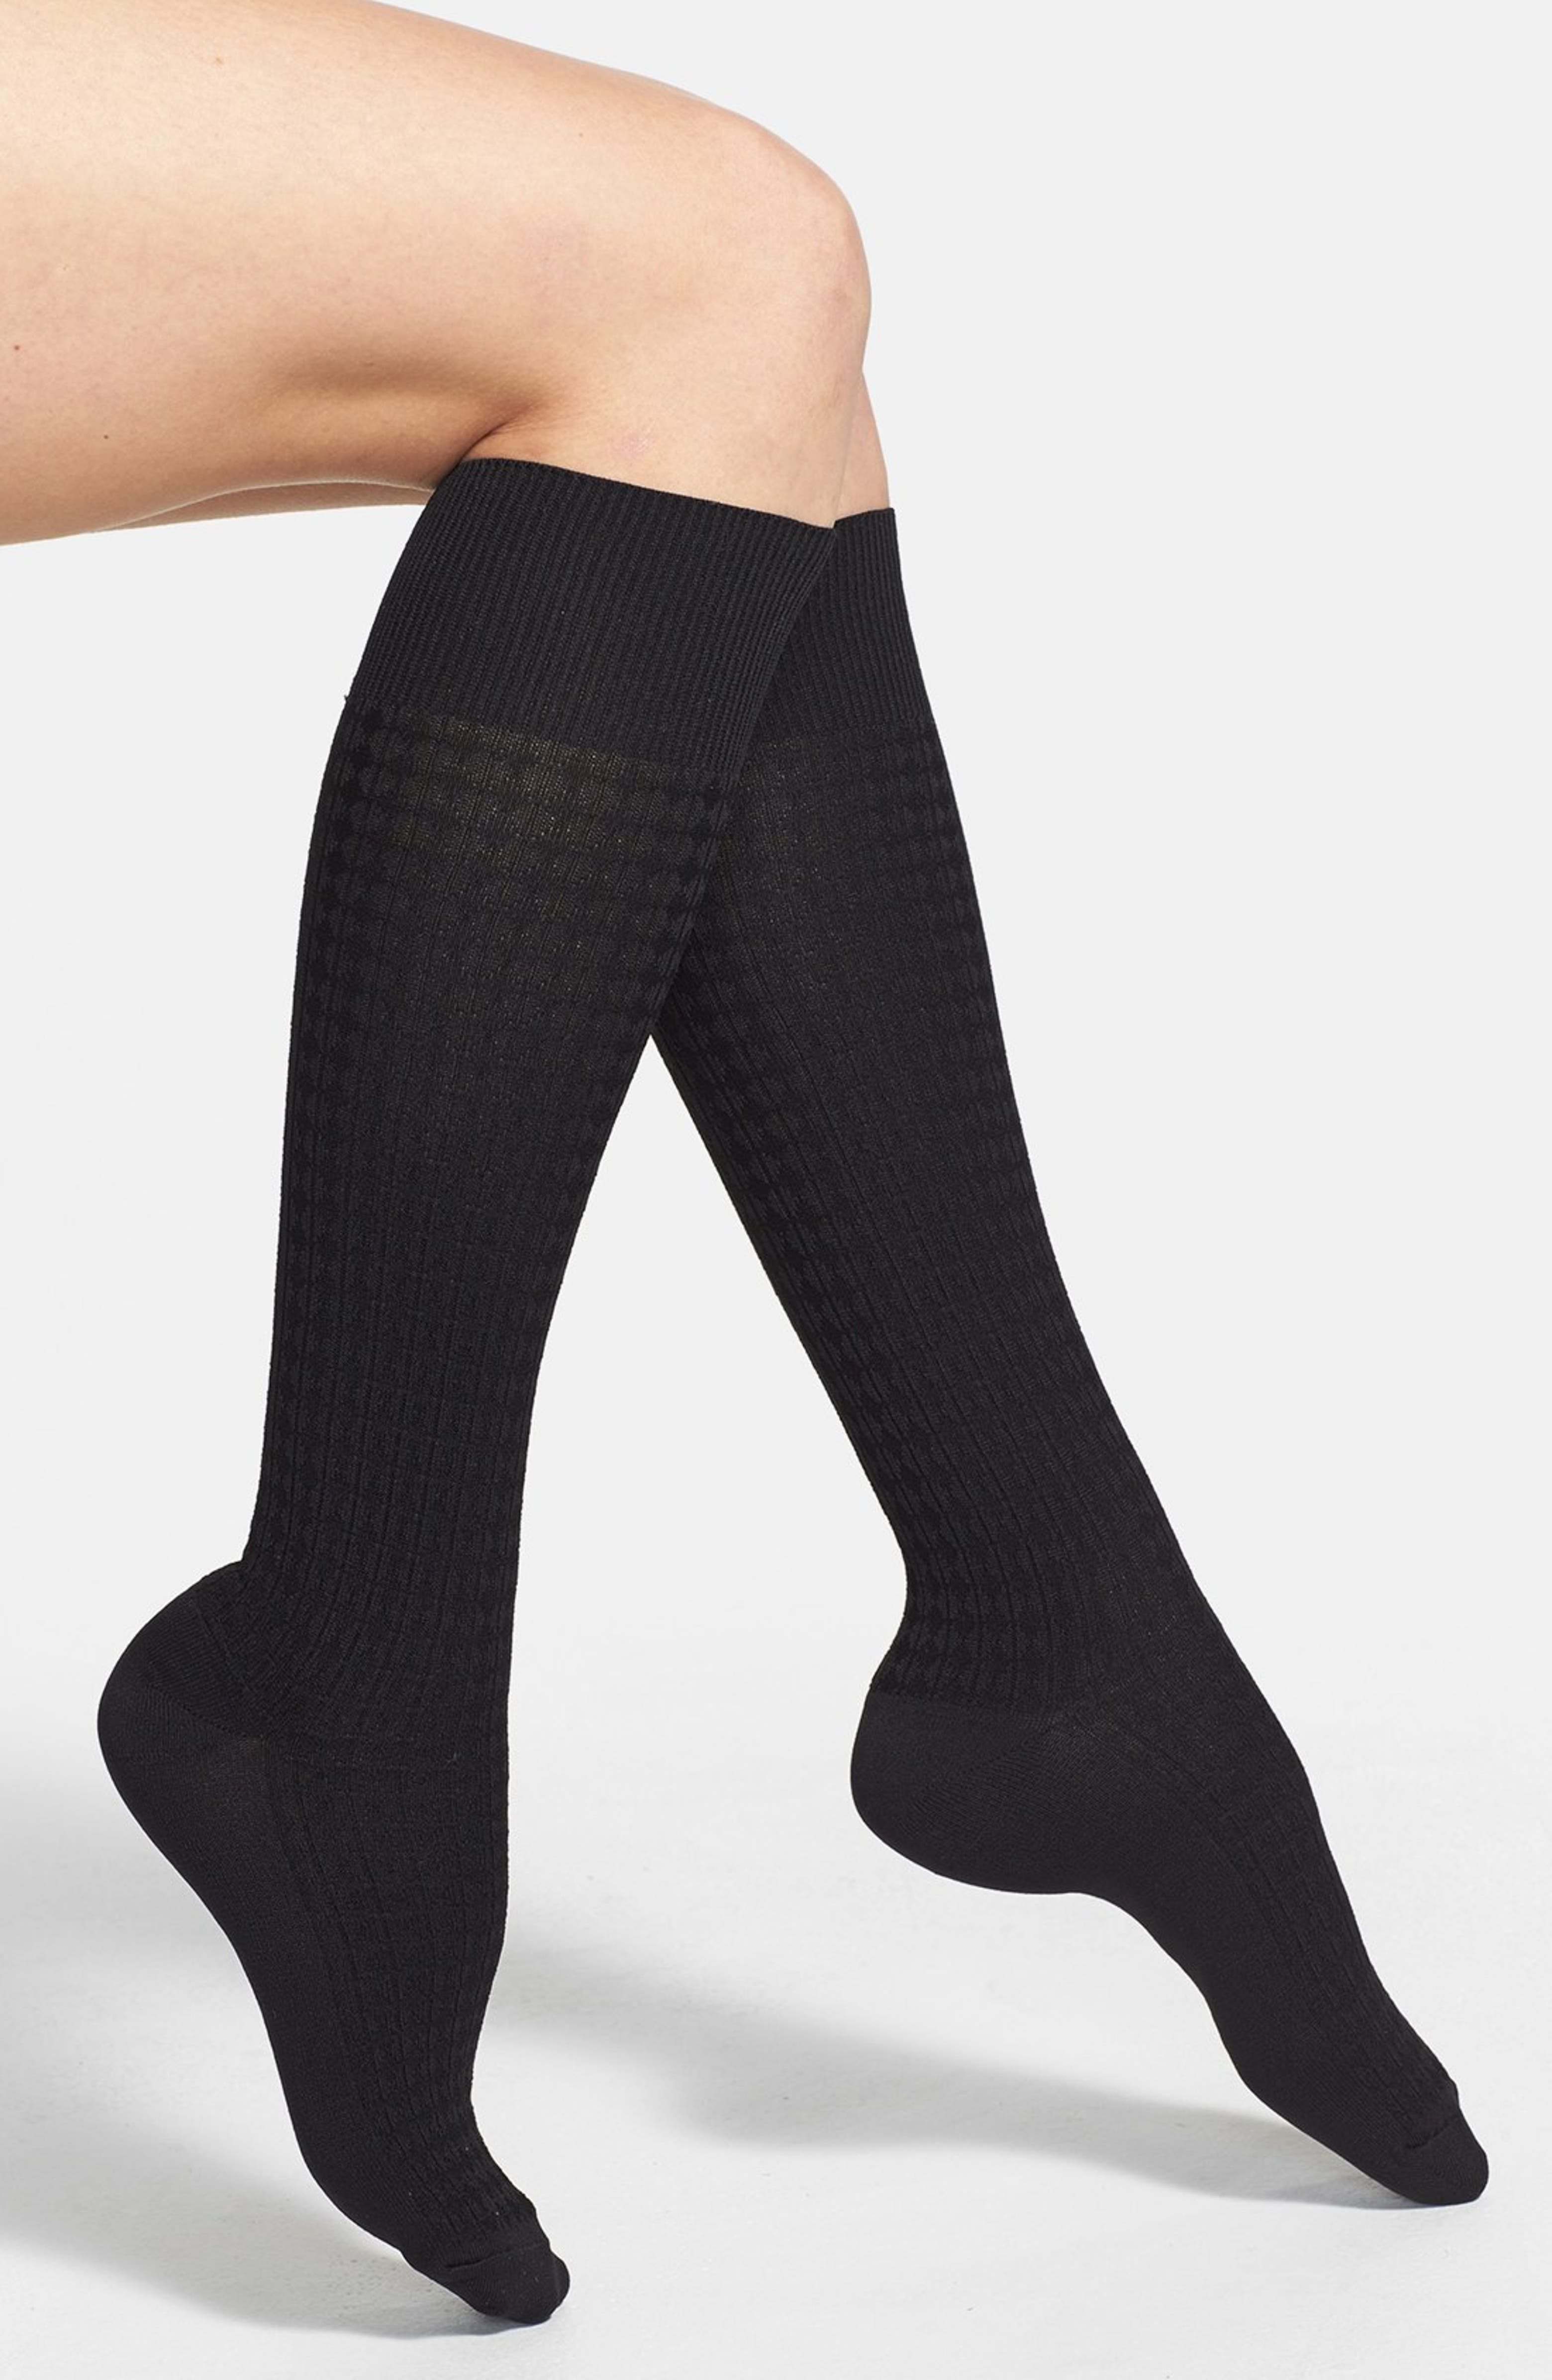 Nordstrom Windowpane' Trouser Socks | Nordstrom